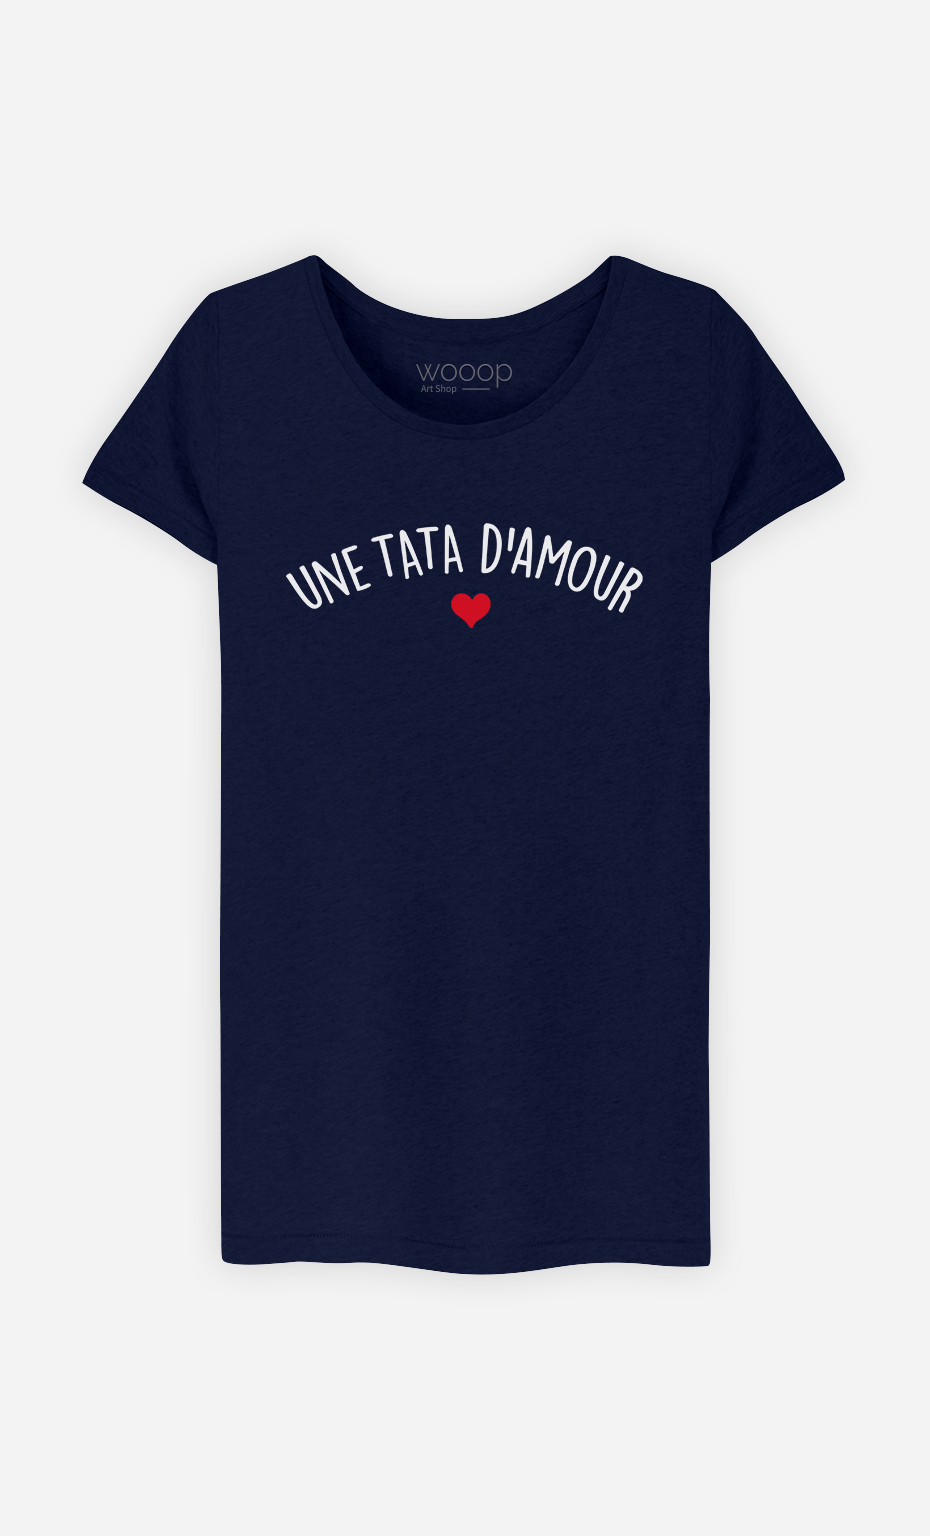 T-shirt Femme Une tata d'amour